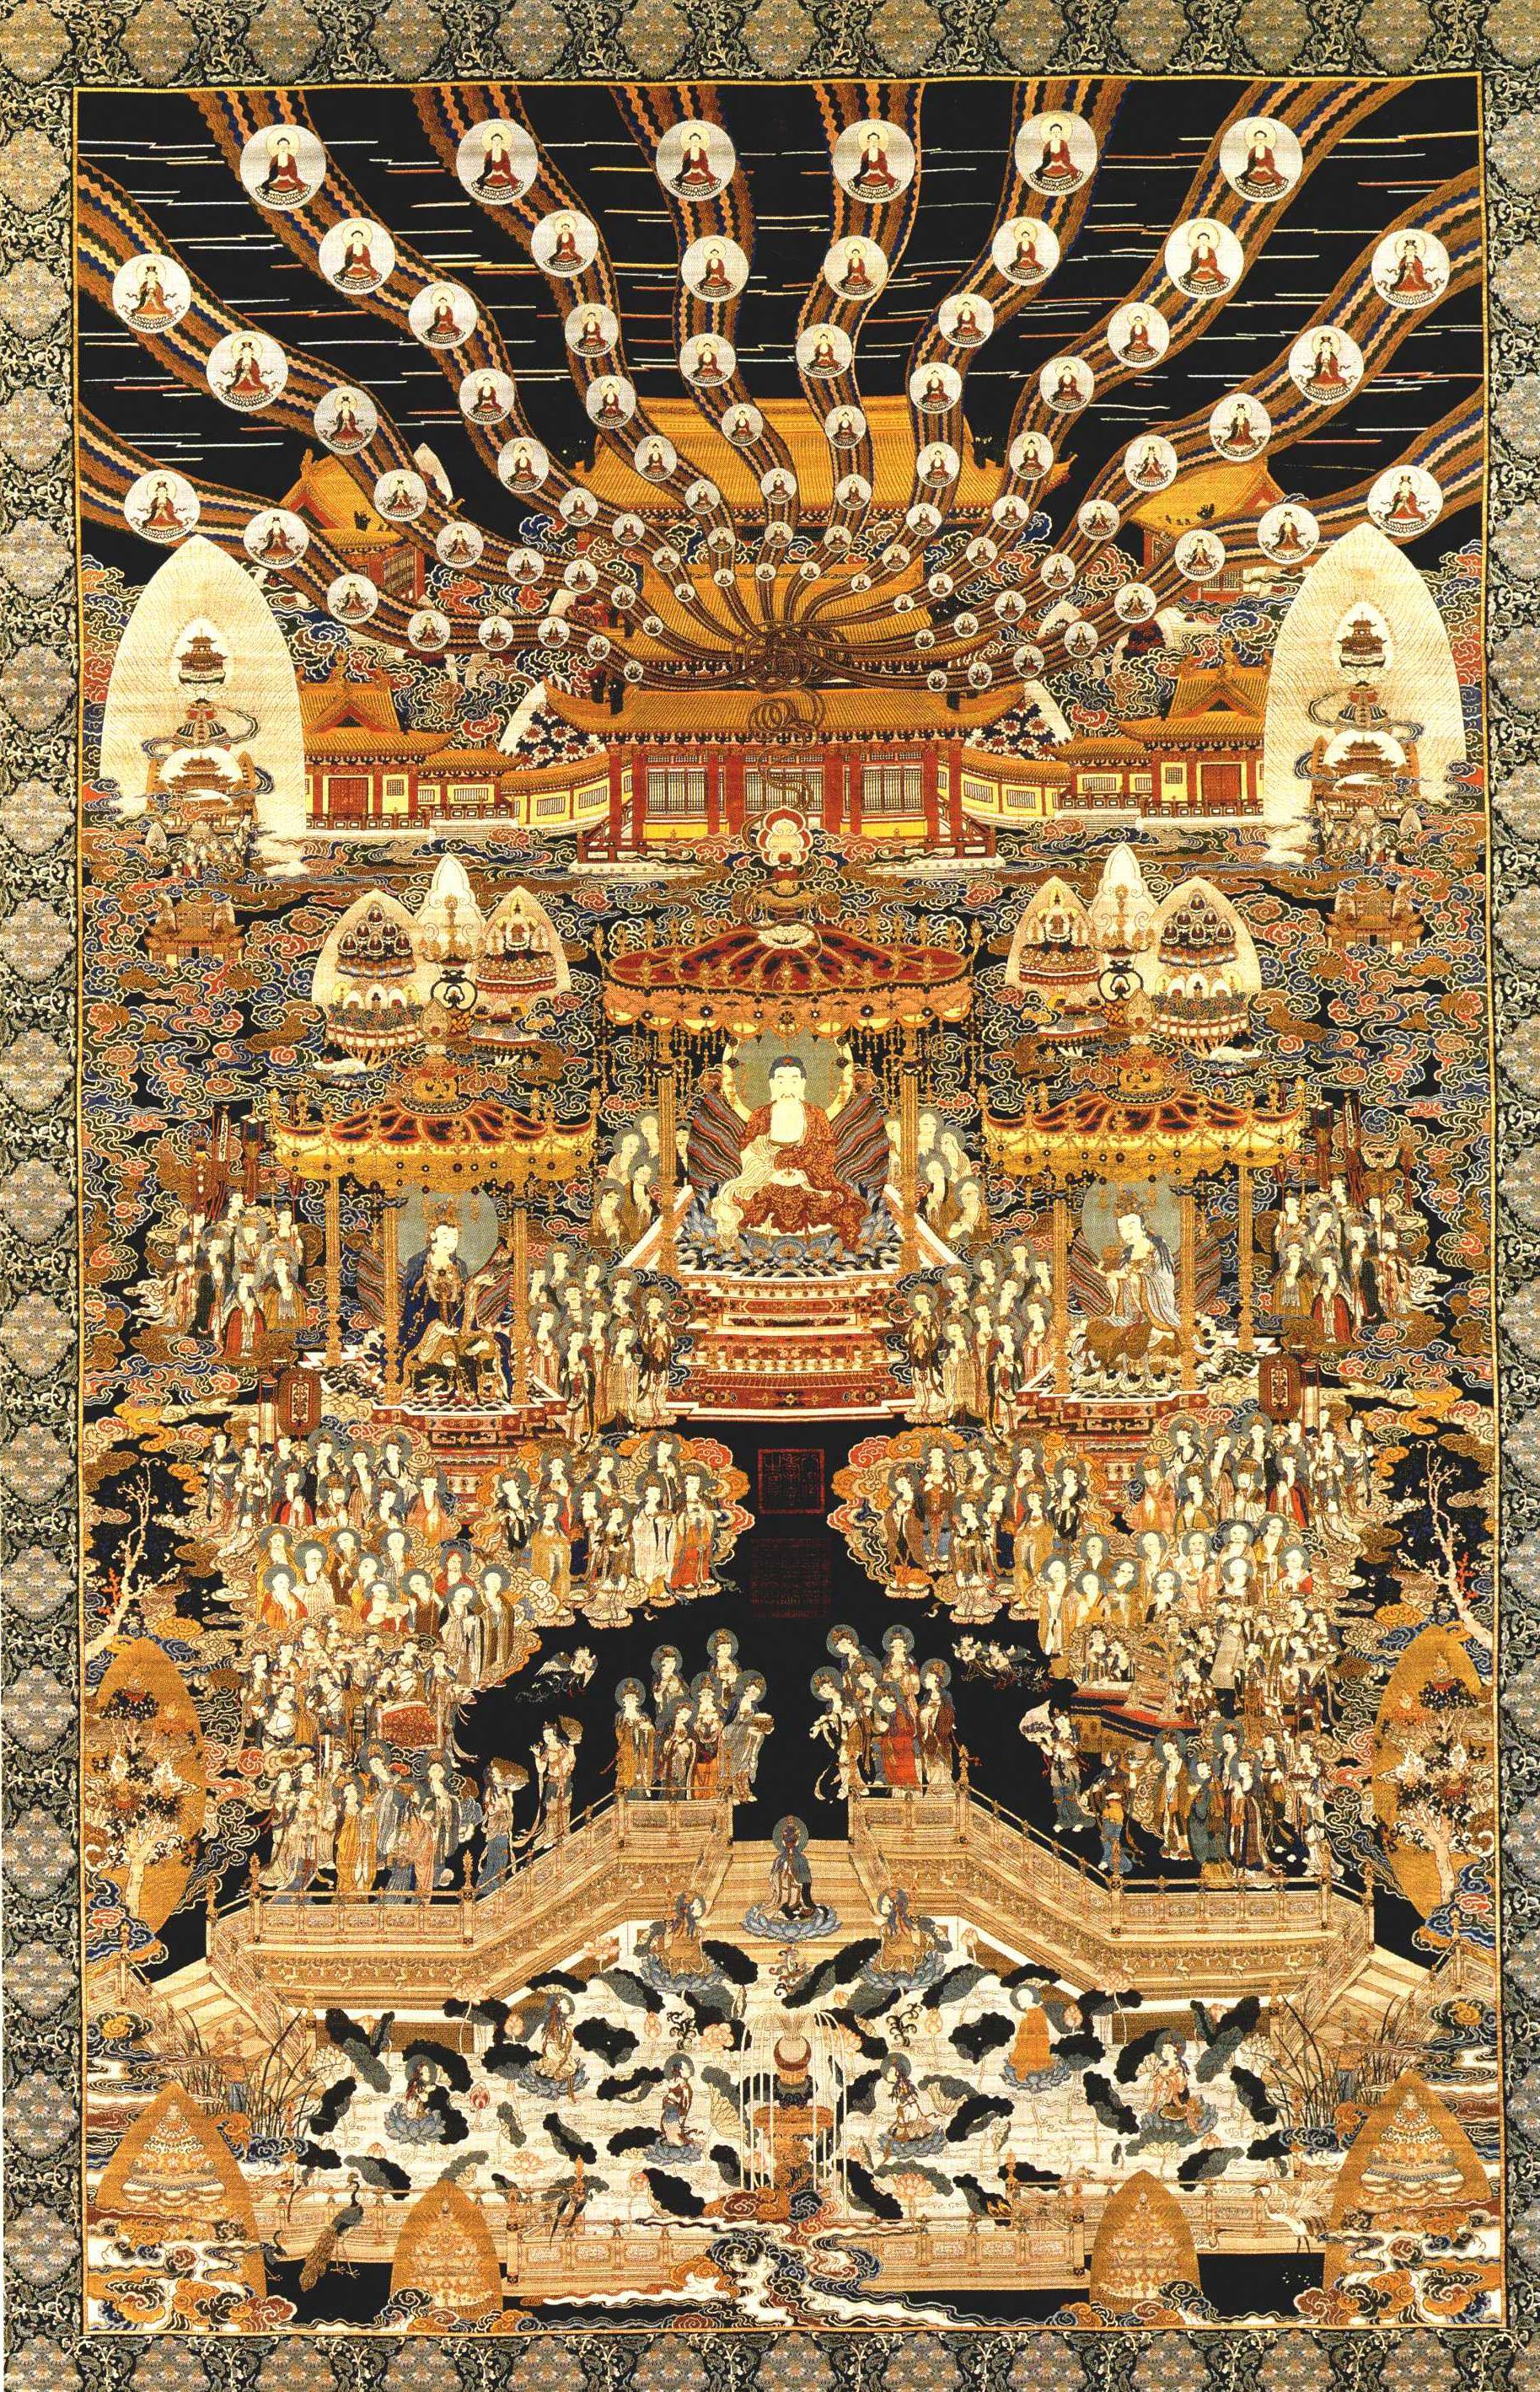 故宫博物院珍藏极乐世界图轴高手巧匠杰作举世仅此一幅